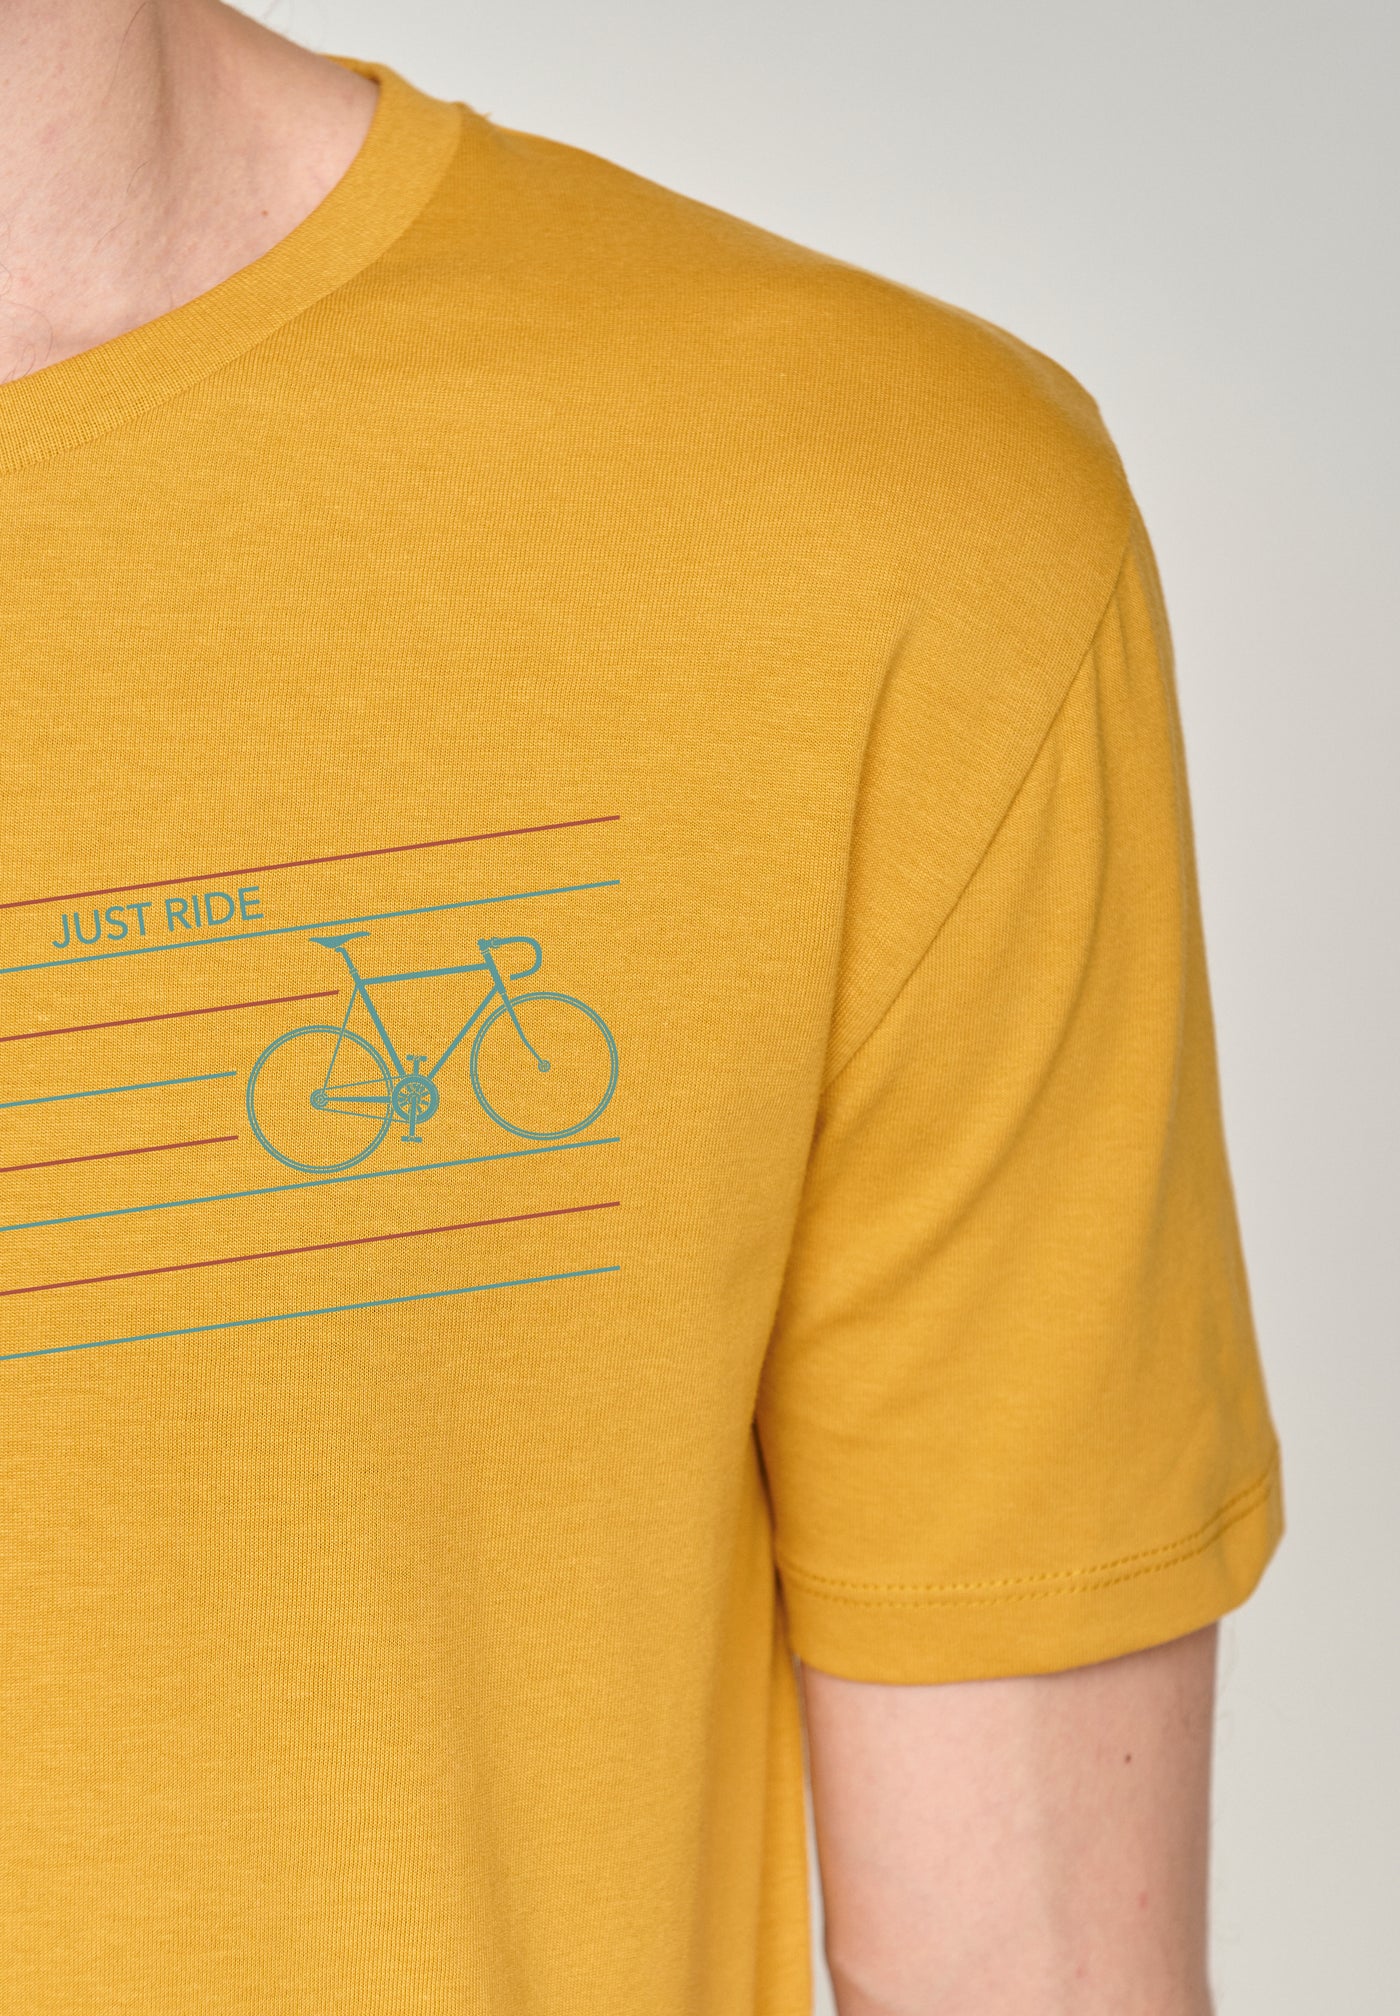 T-Shirt Bike Just Ride Guide Ochre Gelb